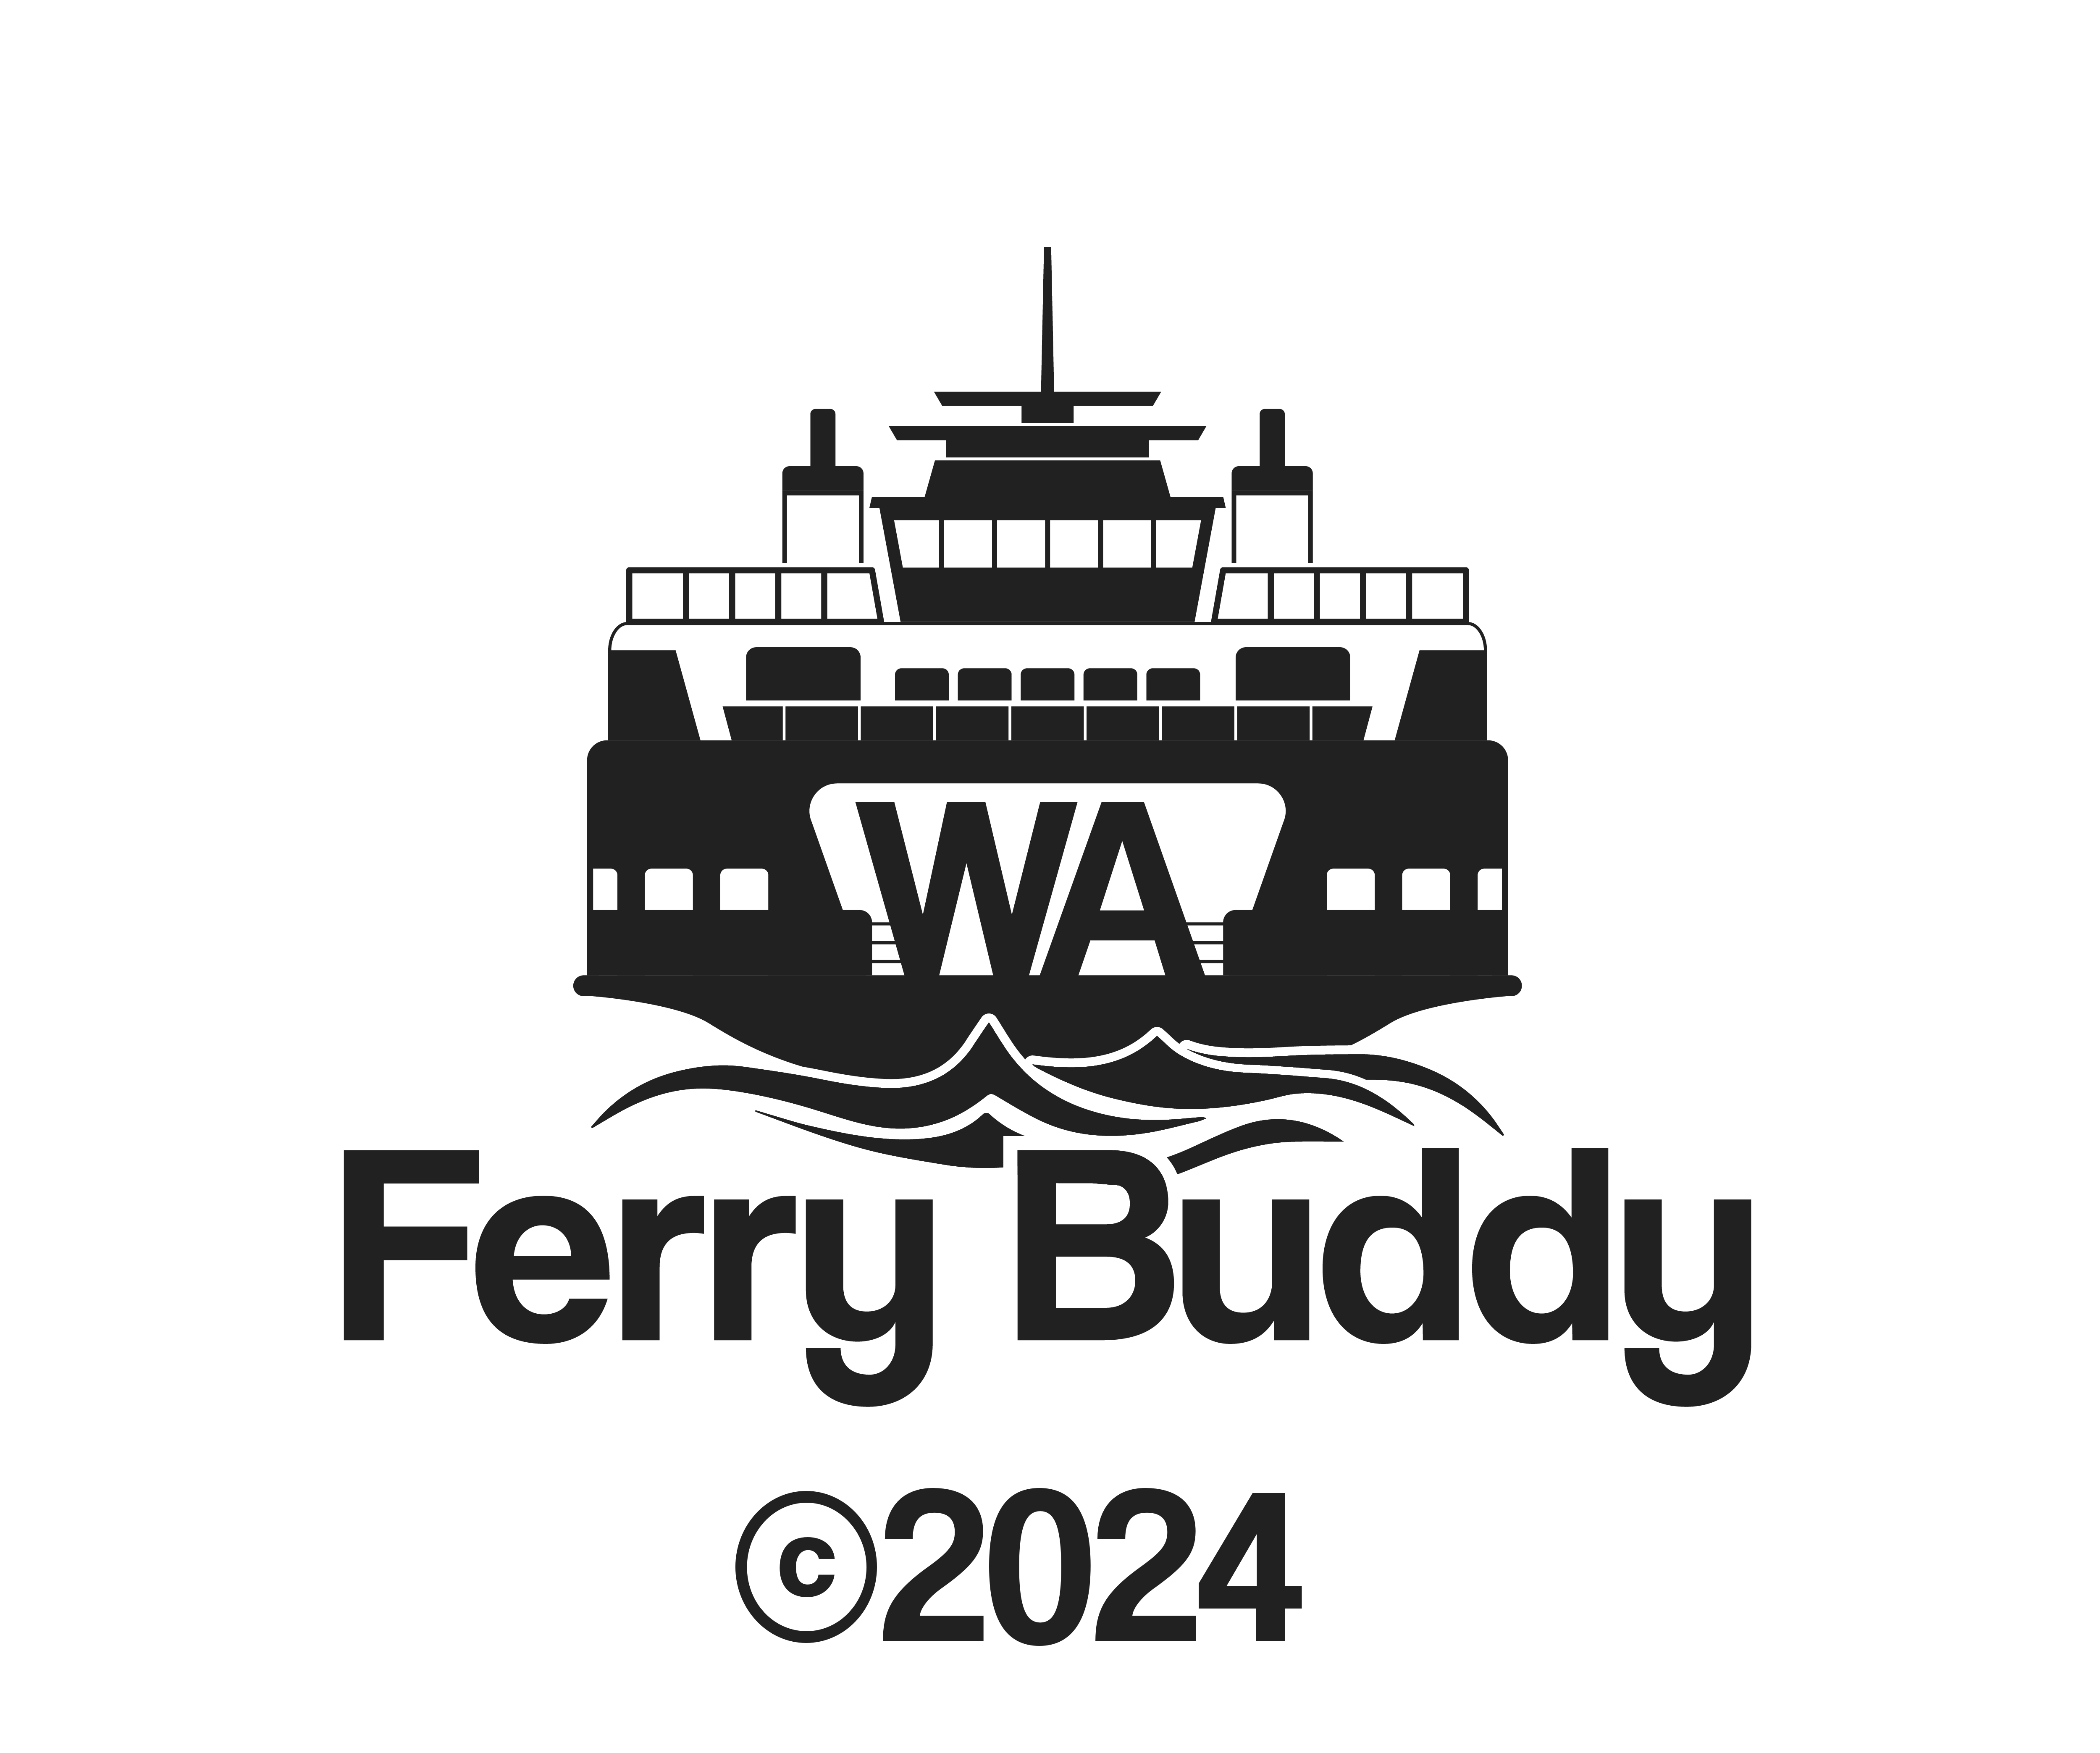 WA Ferry Buddy Logo